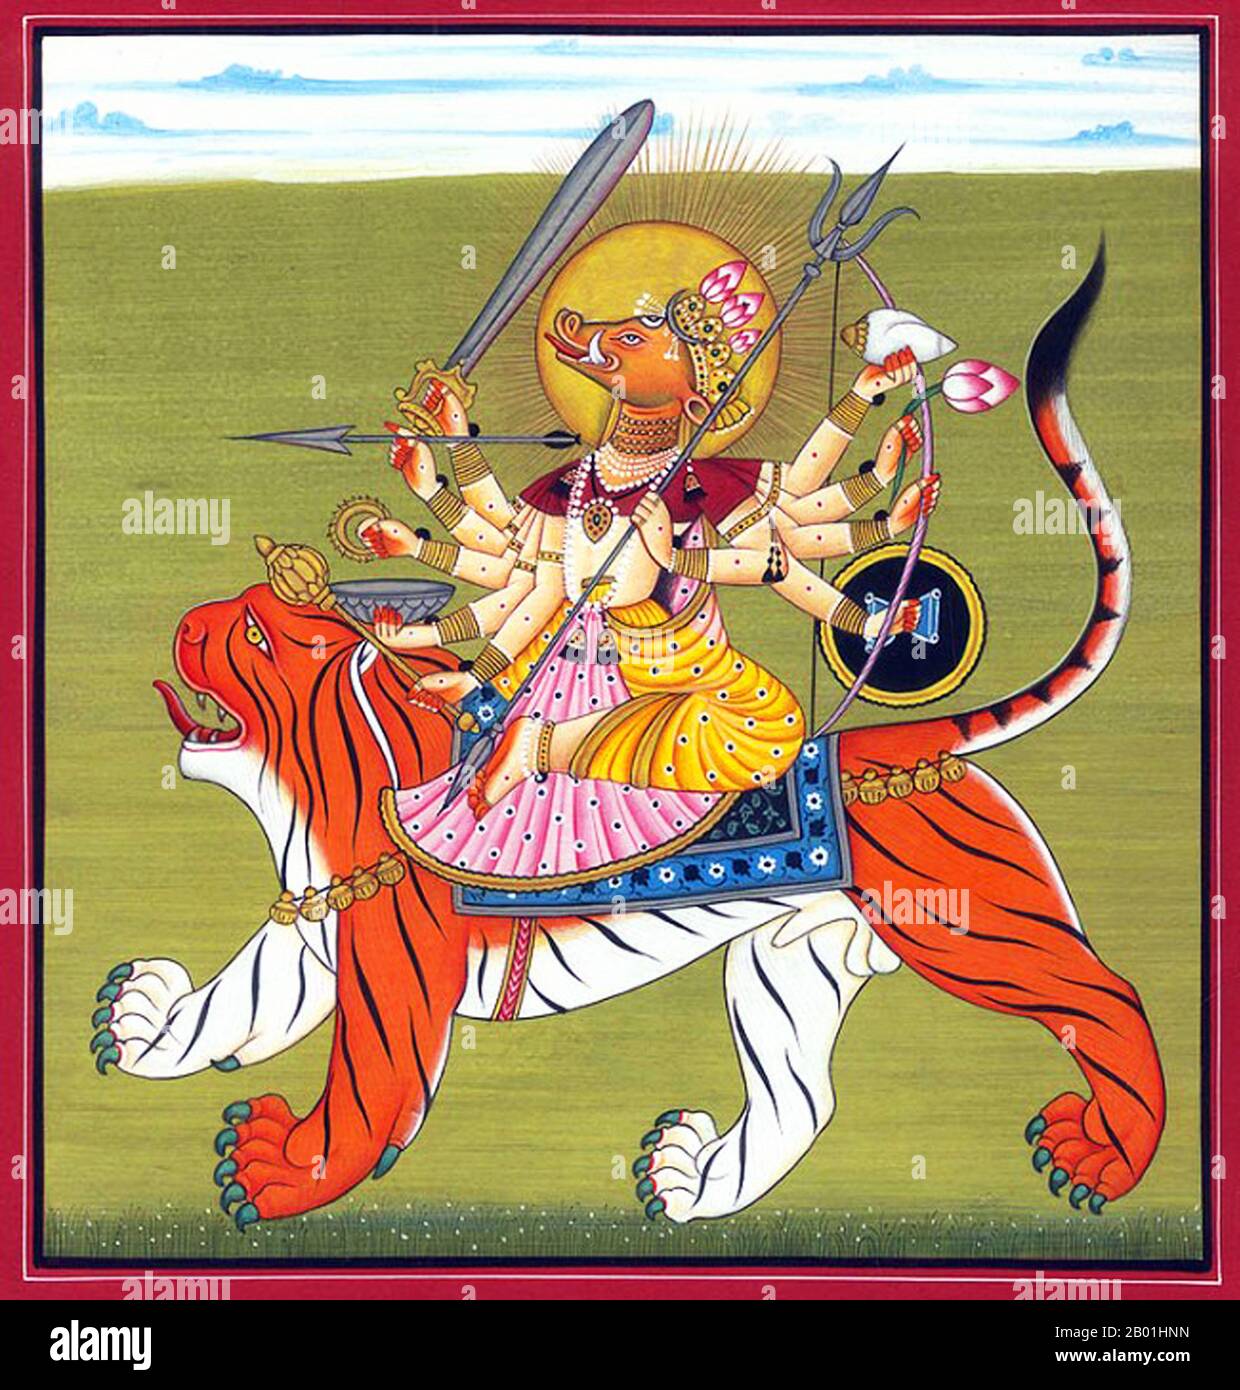 India/Nepal: La dea indù Varahi, tipicamente rappresentata con la testa di un cinghiale e cavalcando una tigre. Acquerello dipinto di Kripal di Nurpur (fl. 1660-1690), c. 1660-1670. Varahi (sanscrito: वाराही, Vārāhī) è una delle Matrikas, un gruppo di sette o otto dee madri della religione indù. Con la testa di una scrofa, Varahi è lo shakti (energia femminile, o talvolta consorte) di Varaha, l'Avatar del cinghiale del dio Vishnu. In Nepal, si chiama Barahi. Varahi è adorata da tutte e tre le principali scuole dell'Induismo: Shaktismo, Shaivismo e Vaishnavismo. Foto Stock